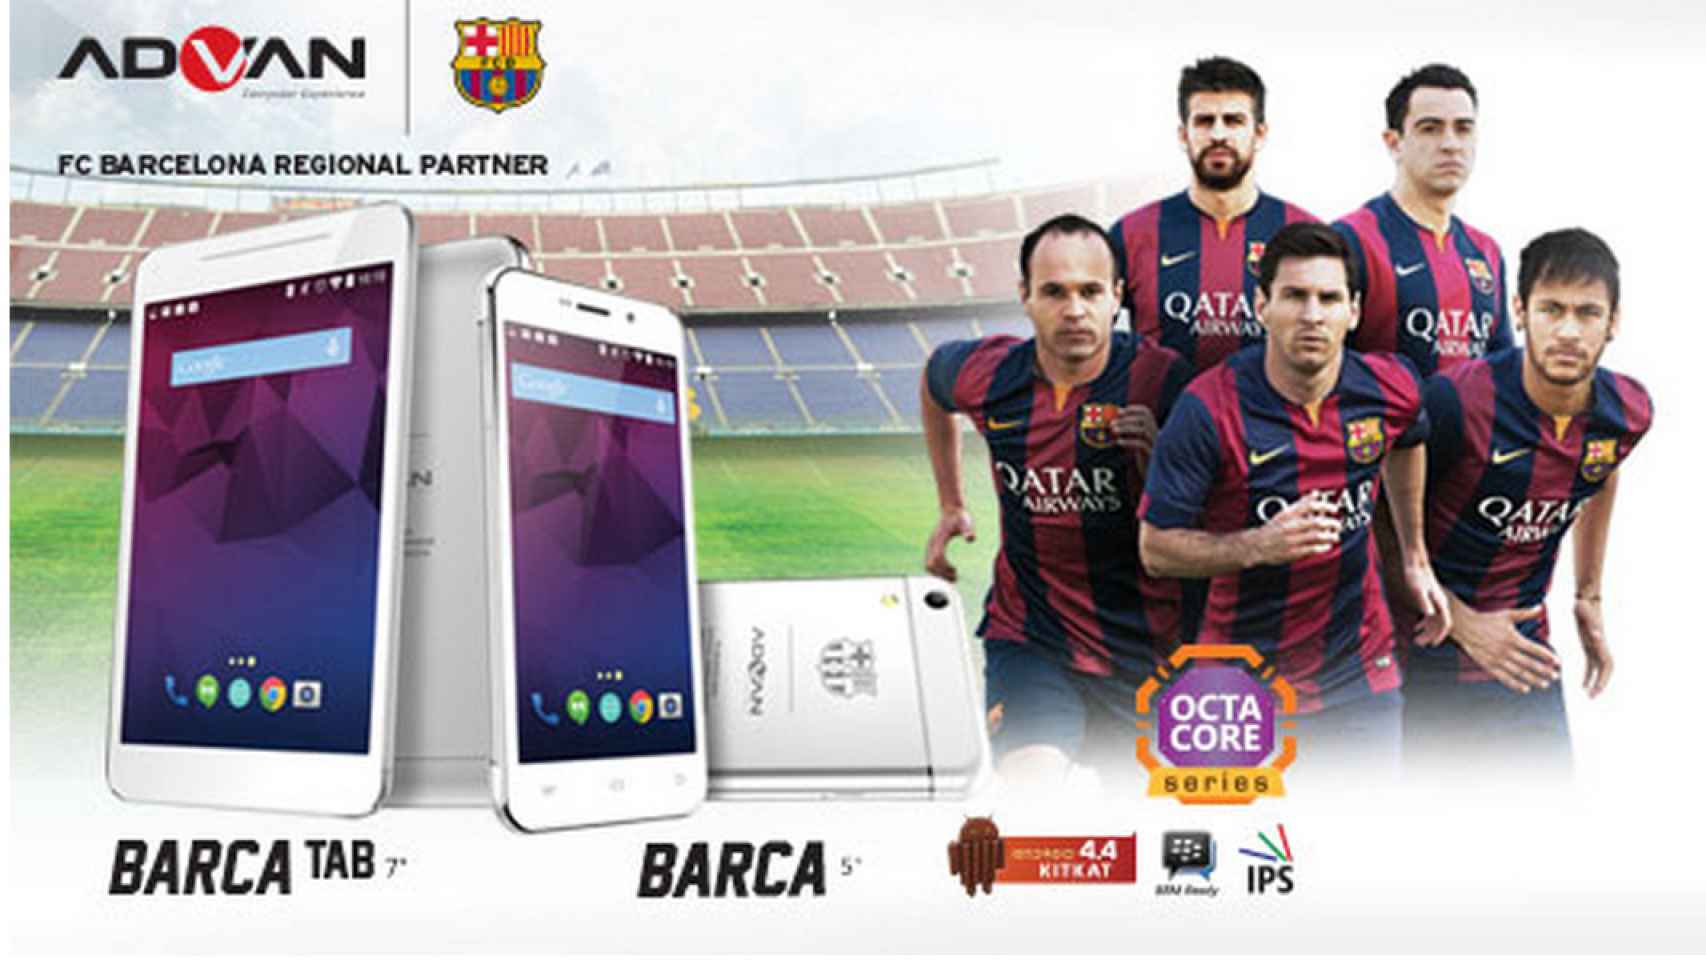 Advan, el fabricante móvil que patrocina al FC Barcelona